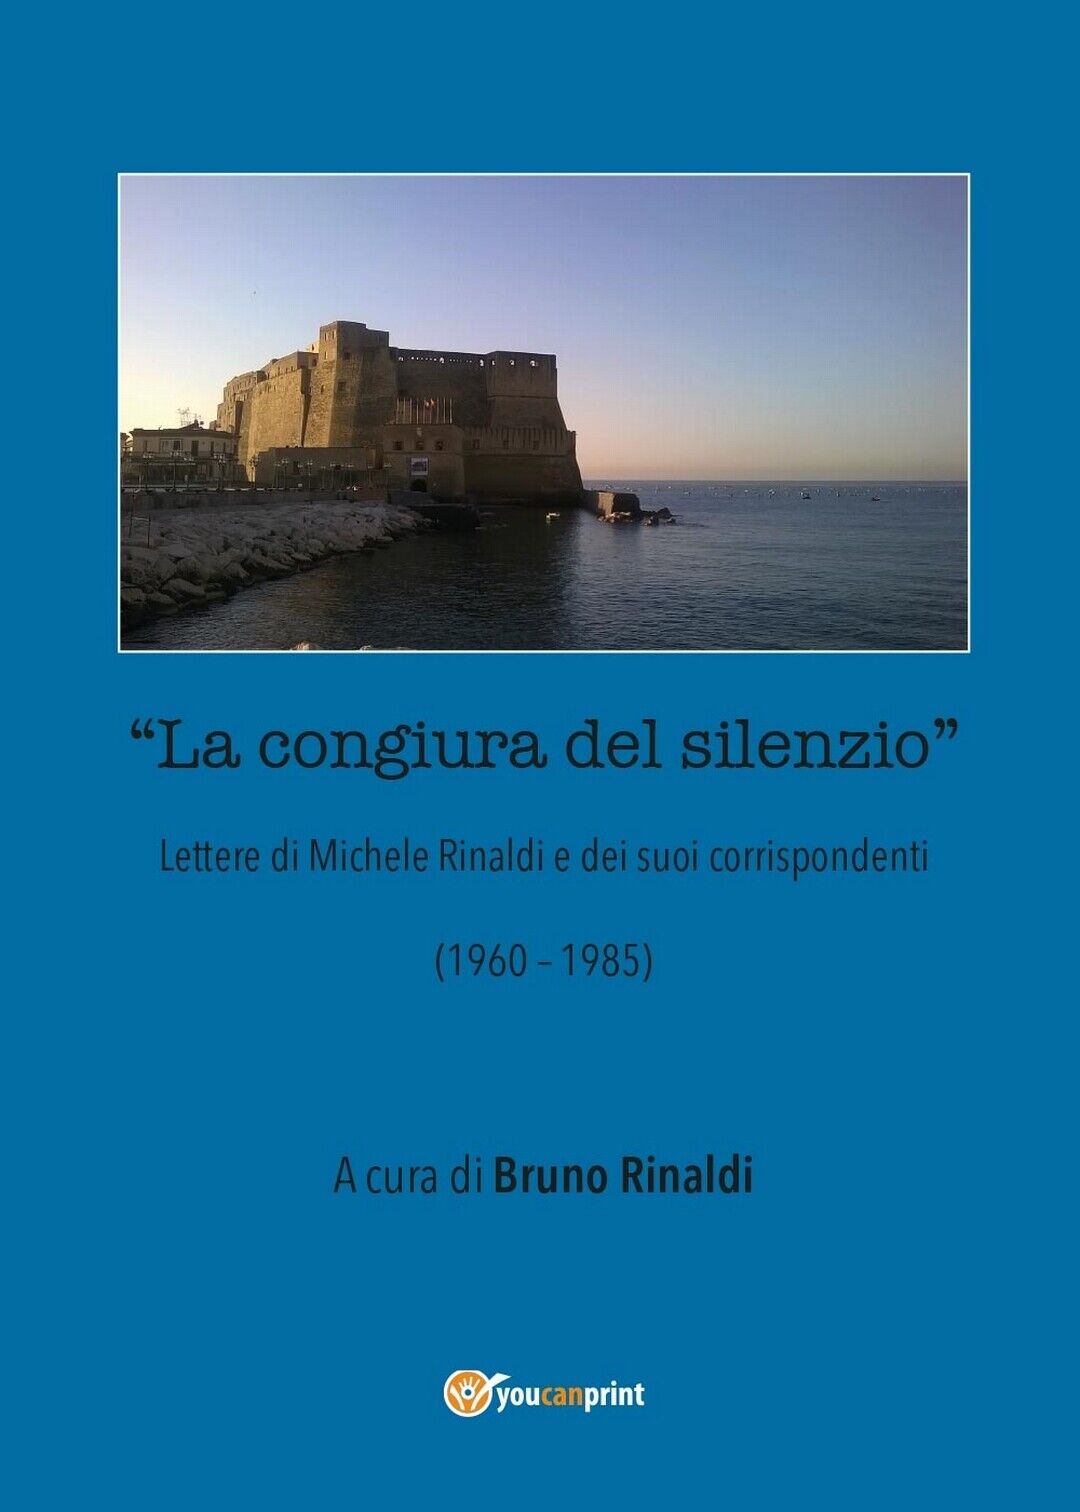 La congiura del silenzio - Lettere di Michele Rinaldi e dei suoi corrispondenti  libro usato